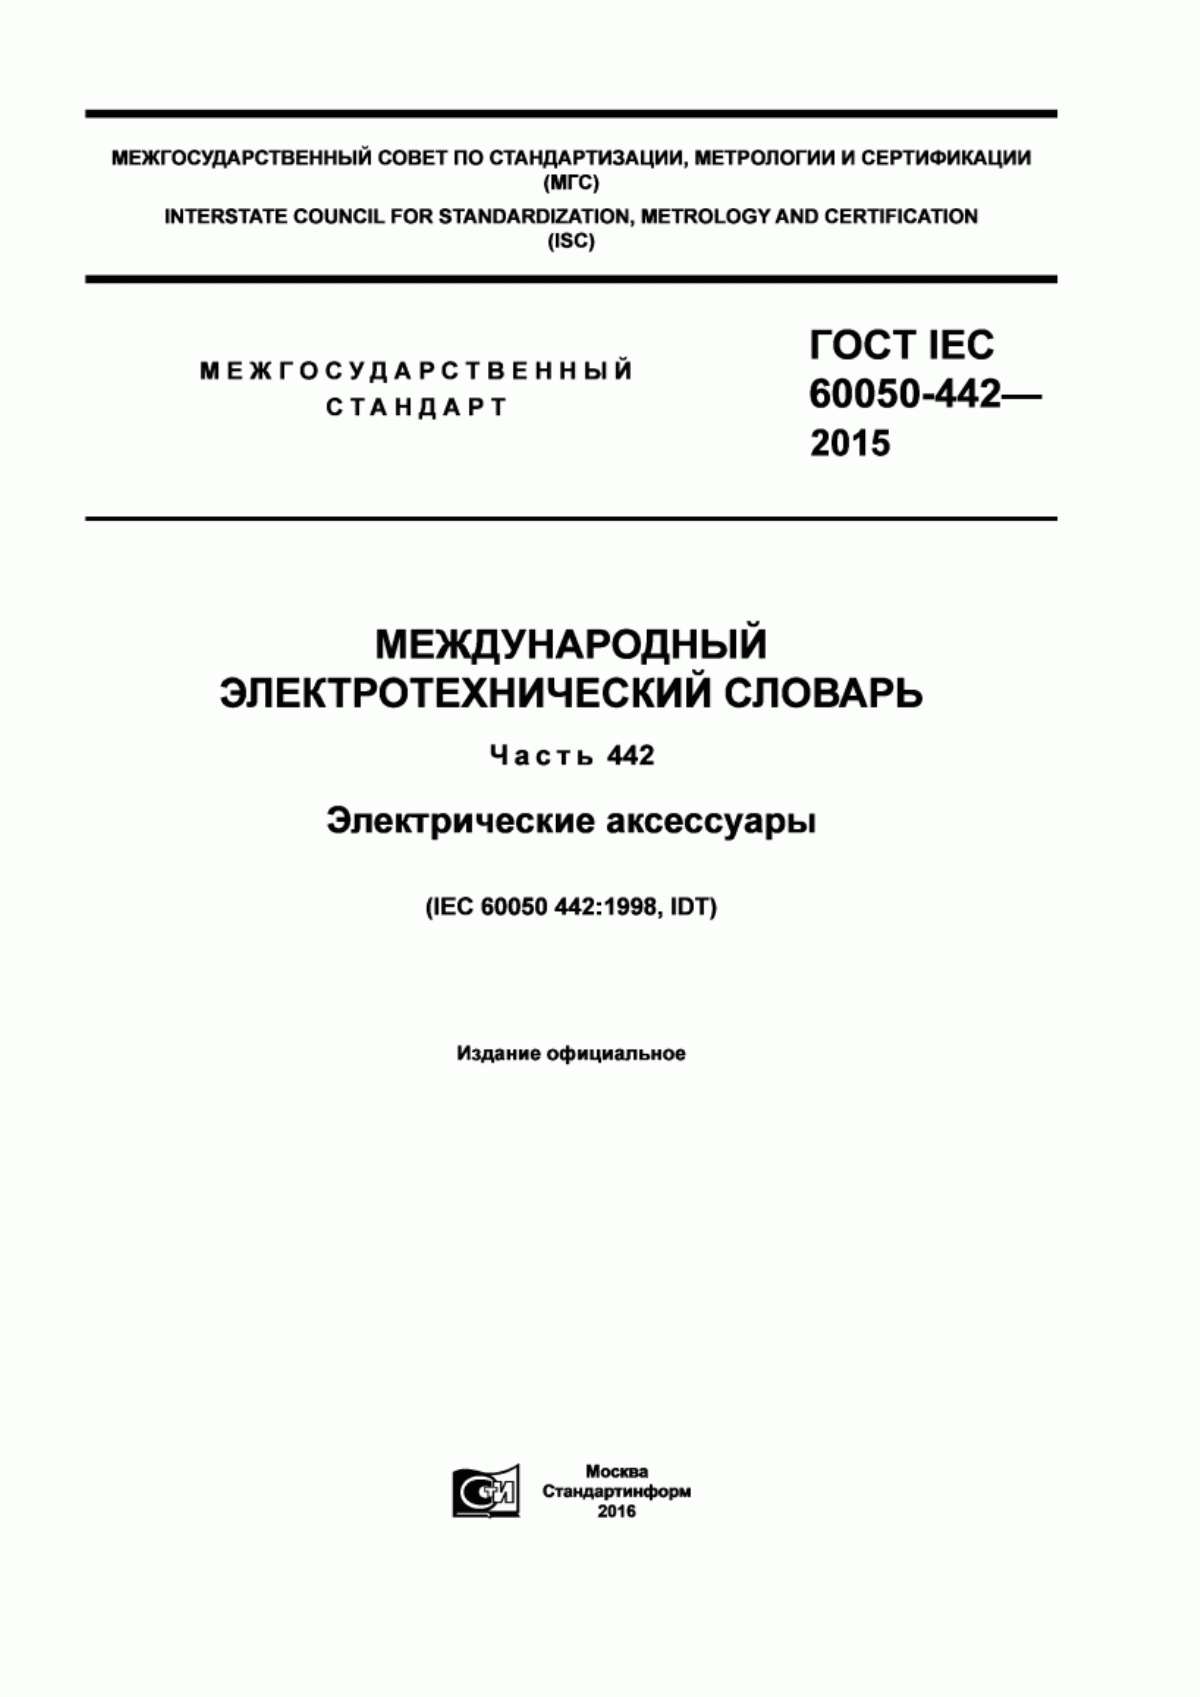 ГОСТ IEC 60050-442-2015 Международный электротехнический словарь. Часть 442. Электрические аксессуары